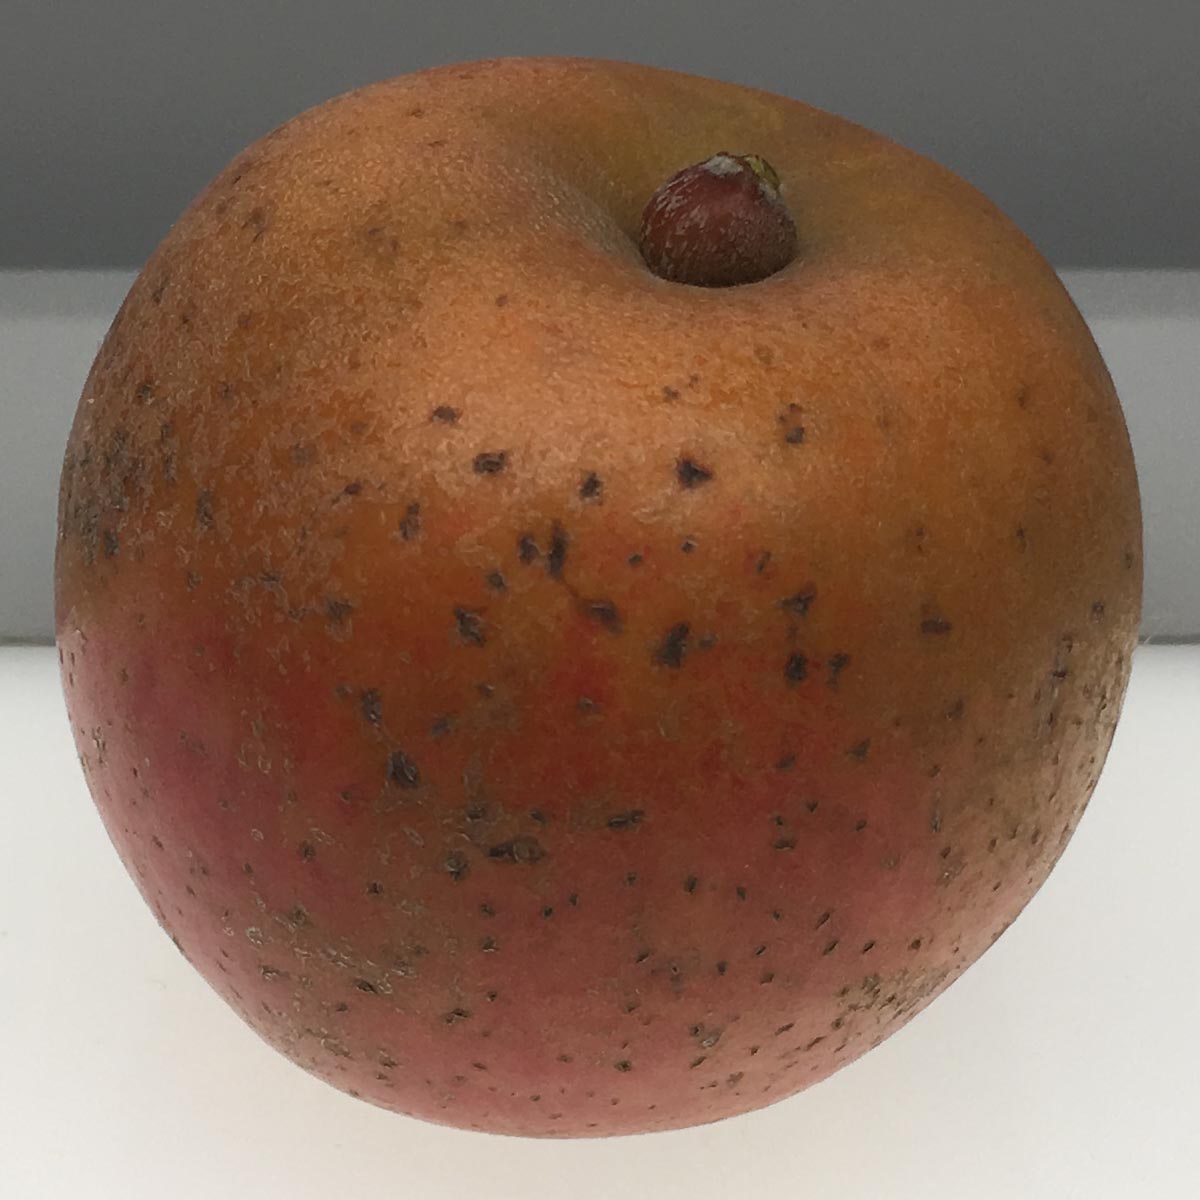 Ashmead's Kernel apple